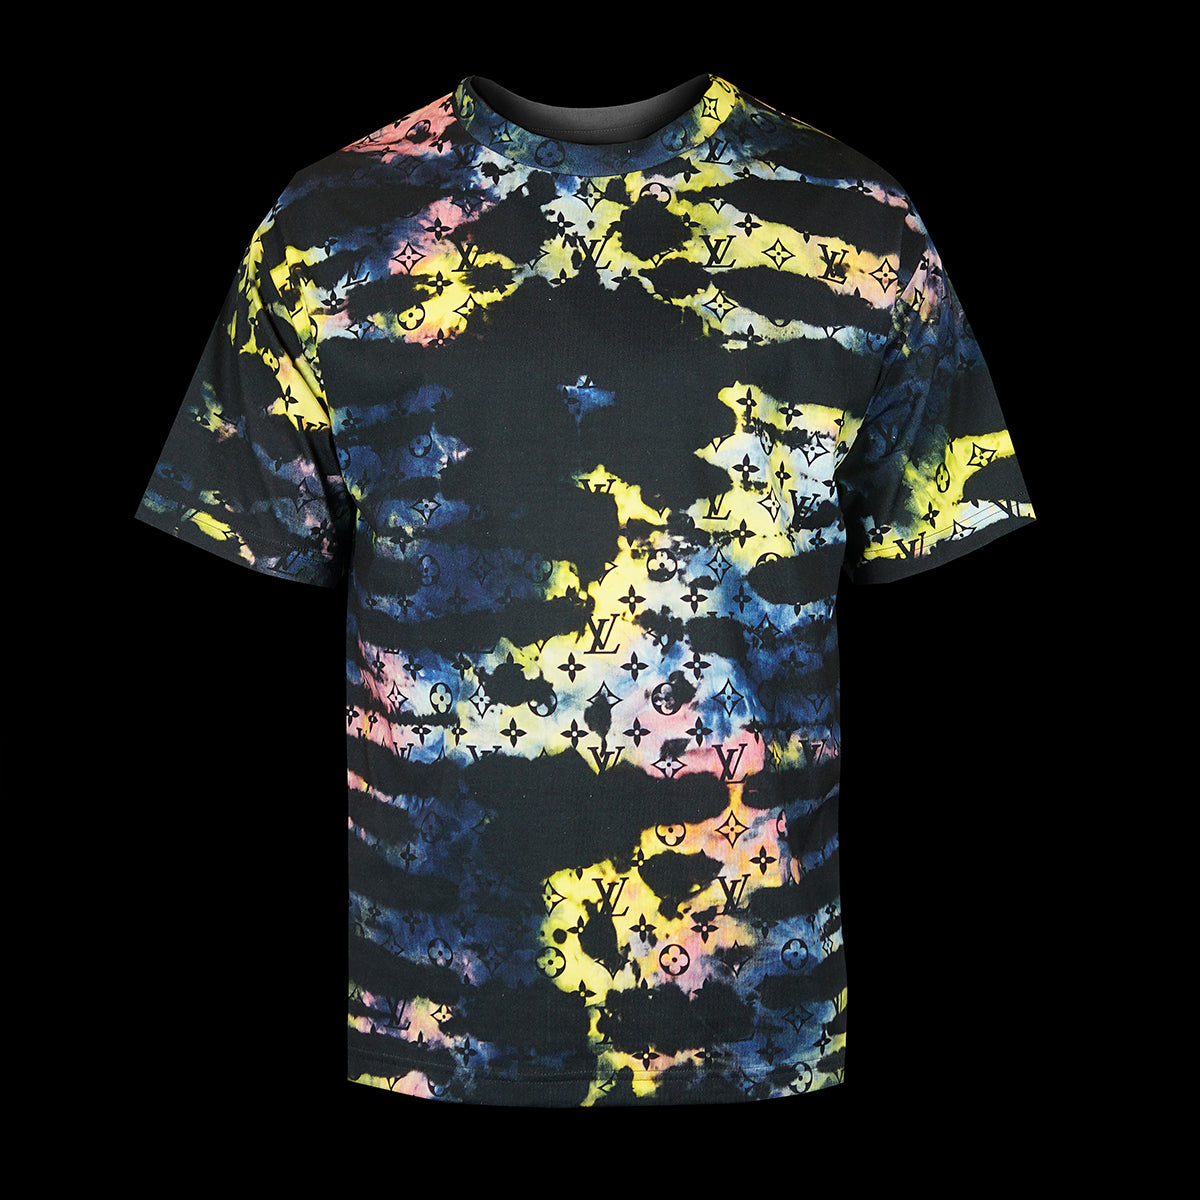 Monogram Tie Dye Printed T-Shirt – Fabriqe